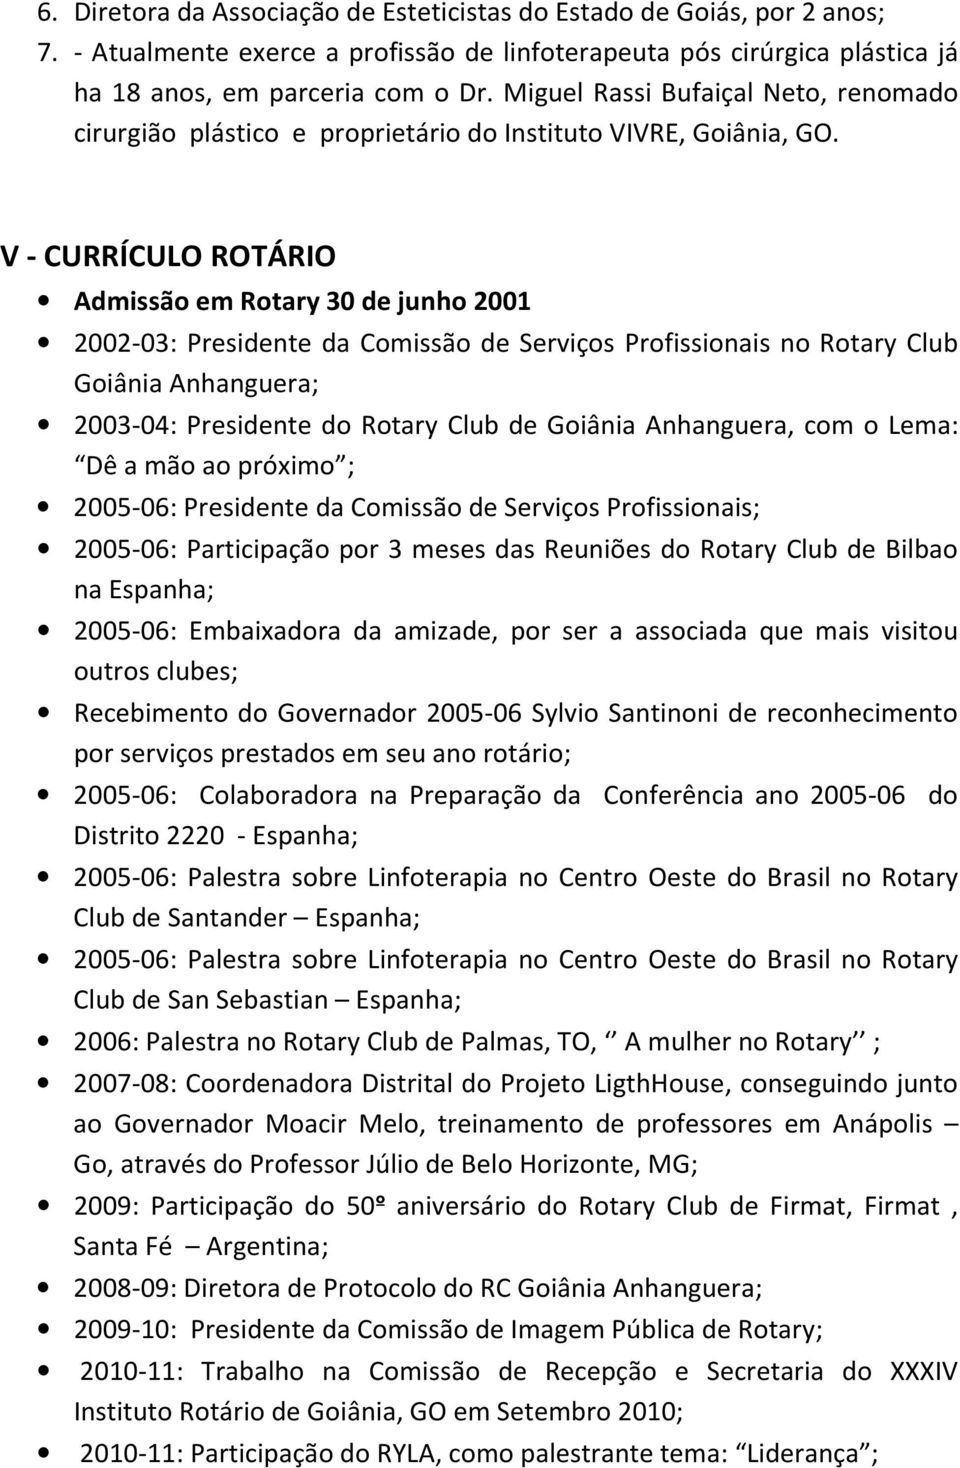 V - CURRÍCULO ROTÁRIO Admissão em Rotary 30 de junho 2001 2002-03: Presidente da Comissão de Serviços Profissionais no Rotary Club Goiânia Anhanguera; 2003-04: Presidente do Rotary Club de Goiânia